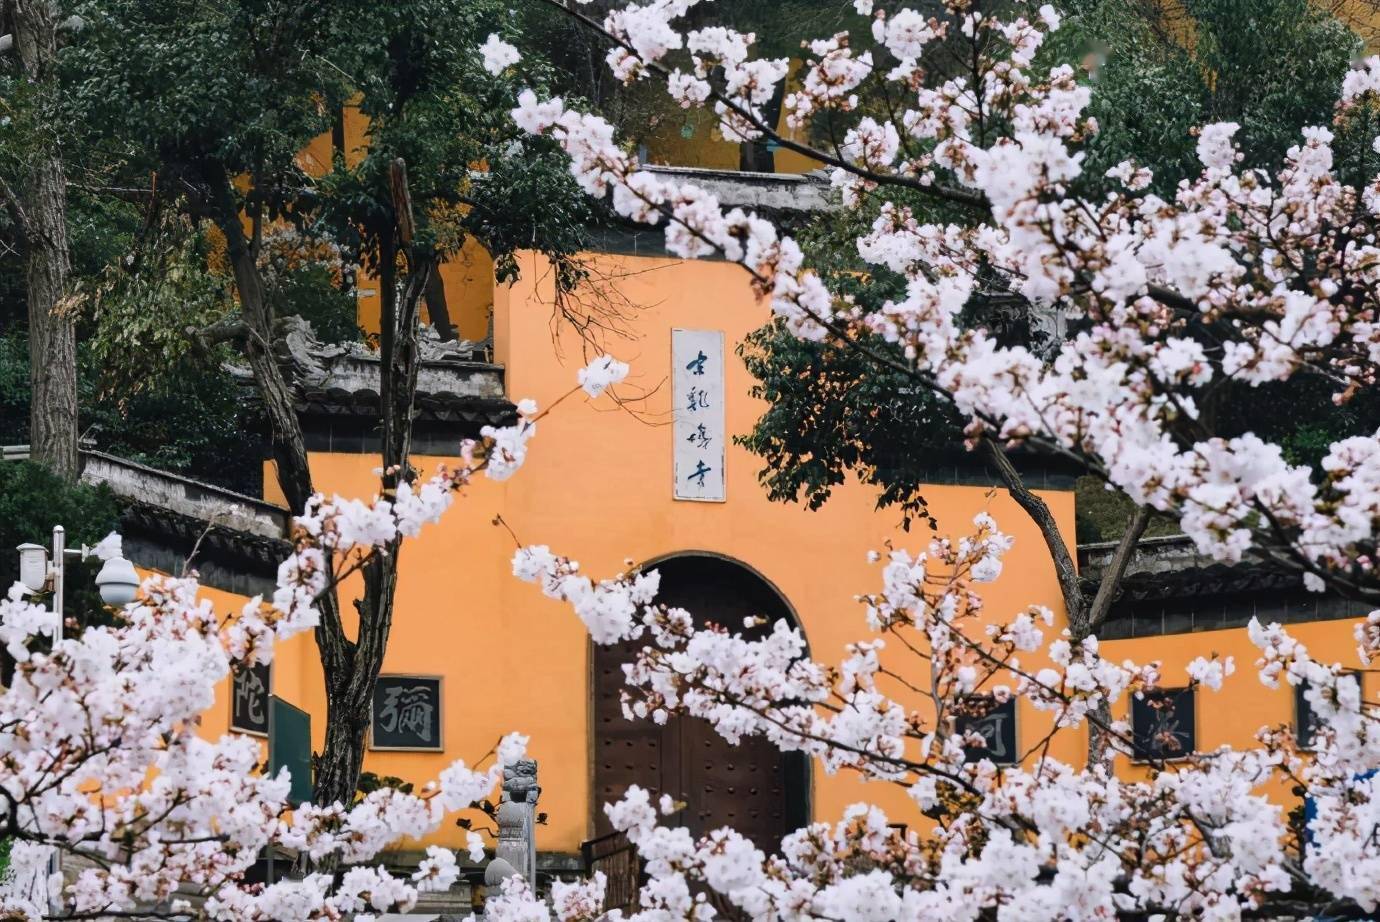 春天的南京鸡鸣寺青瓦黄墙映衬着娇嫩的樱花让这里更加美丽